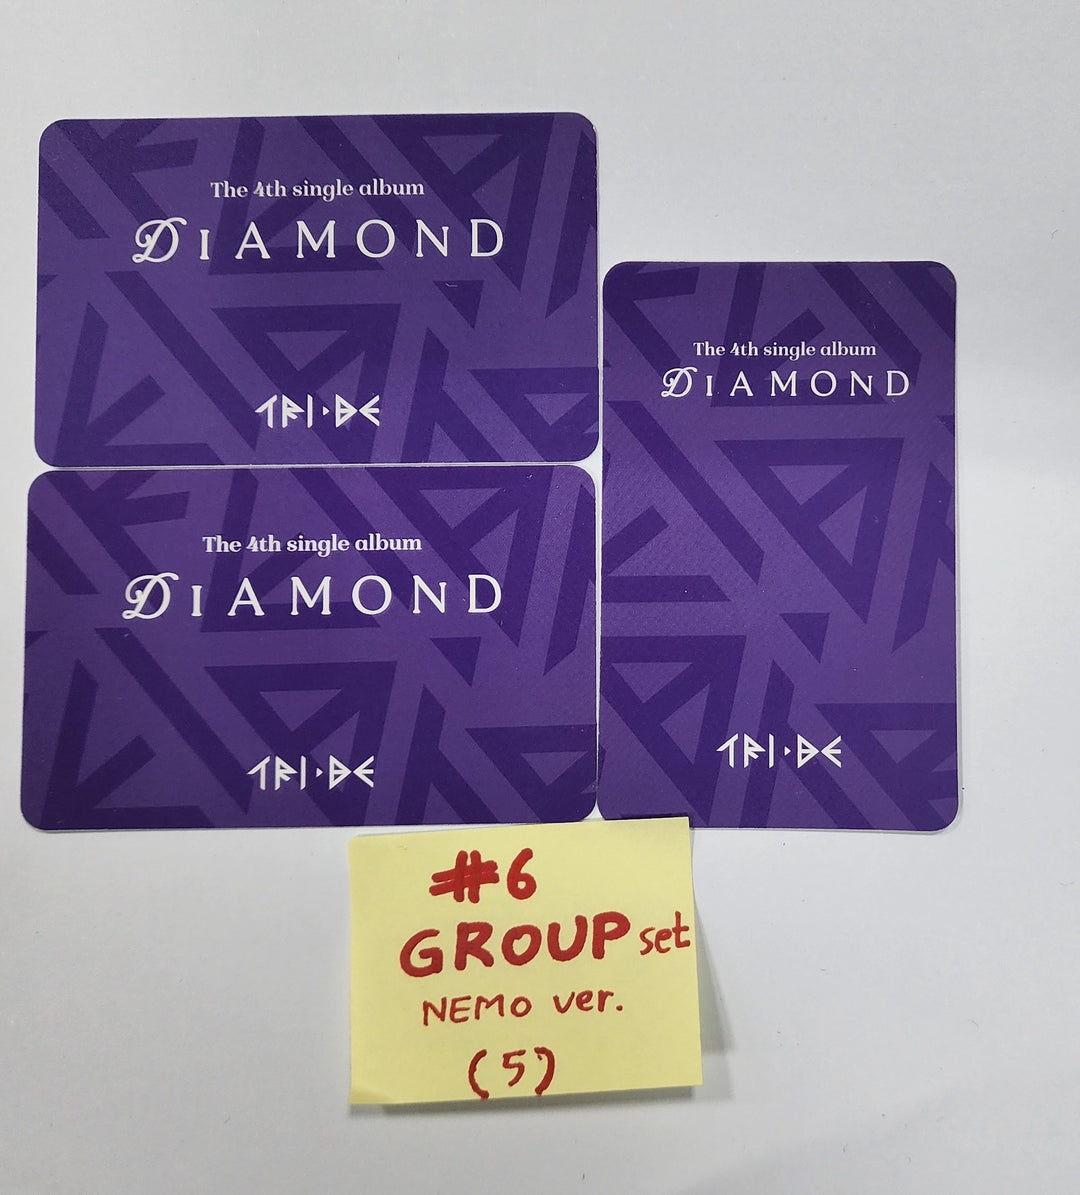 TRI.BE "Diamond" - Official Photocard [Nemo Ver.] [24.3.13]